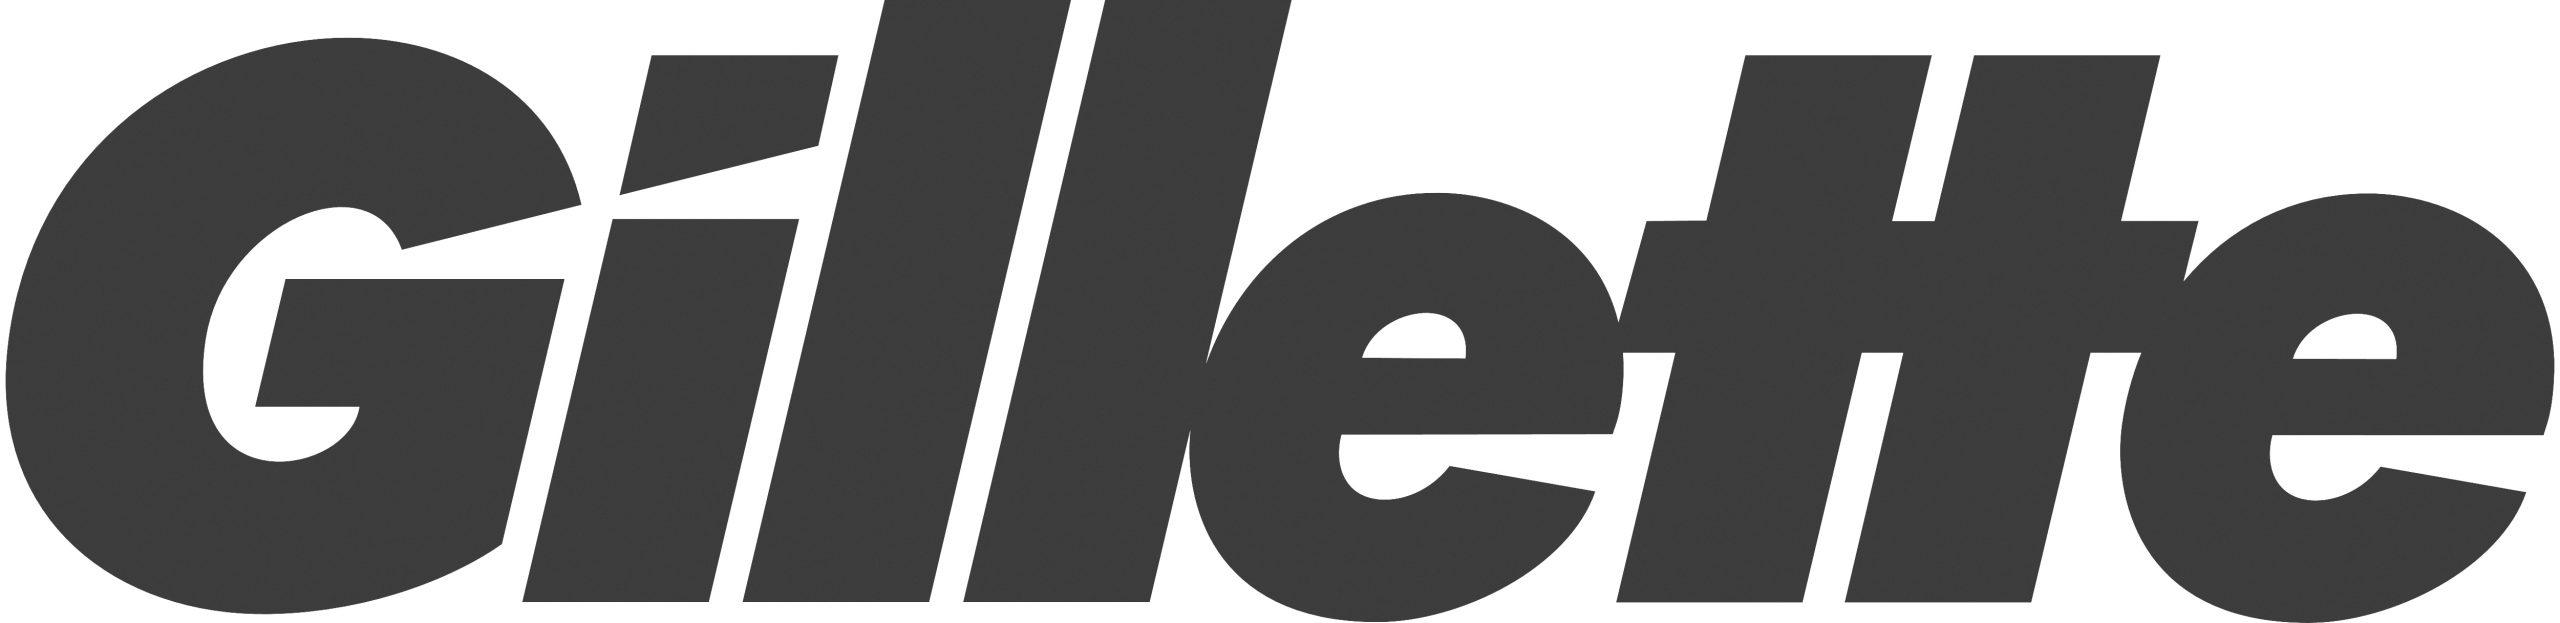 Gillette end user logo